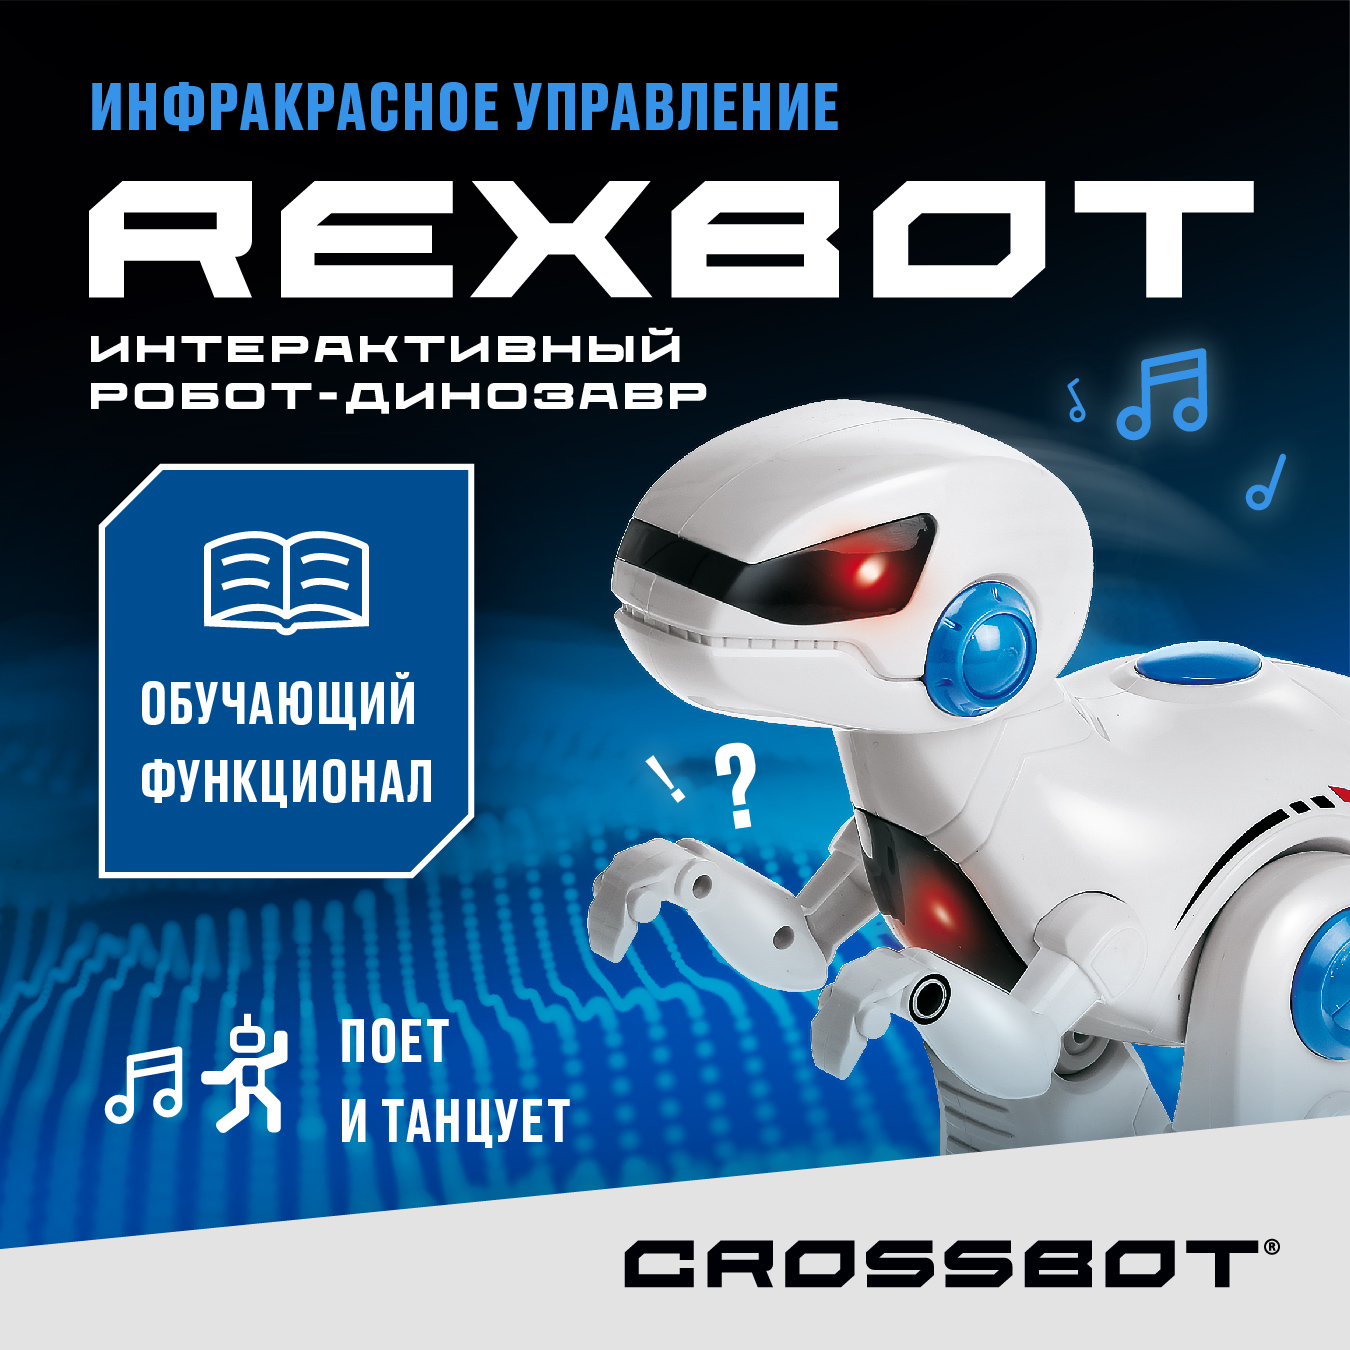 Радиоуправляемая игрушка Робот Динозавр Рекс на пульте Crossbot радиоуправляемый мотоцикл на пульте crossbot